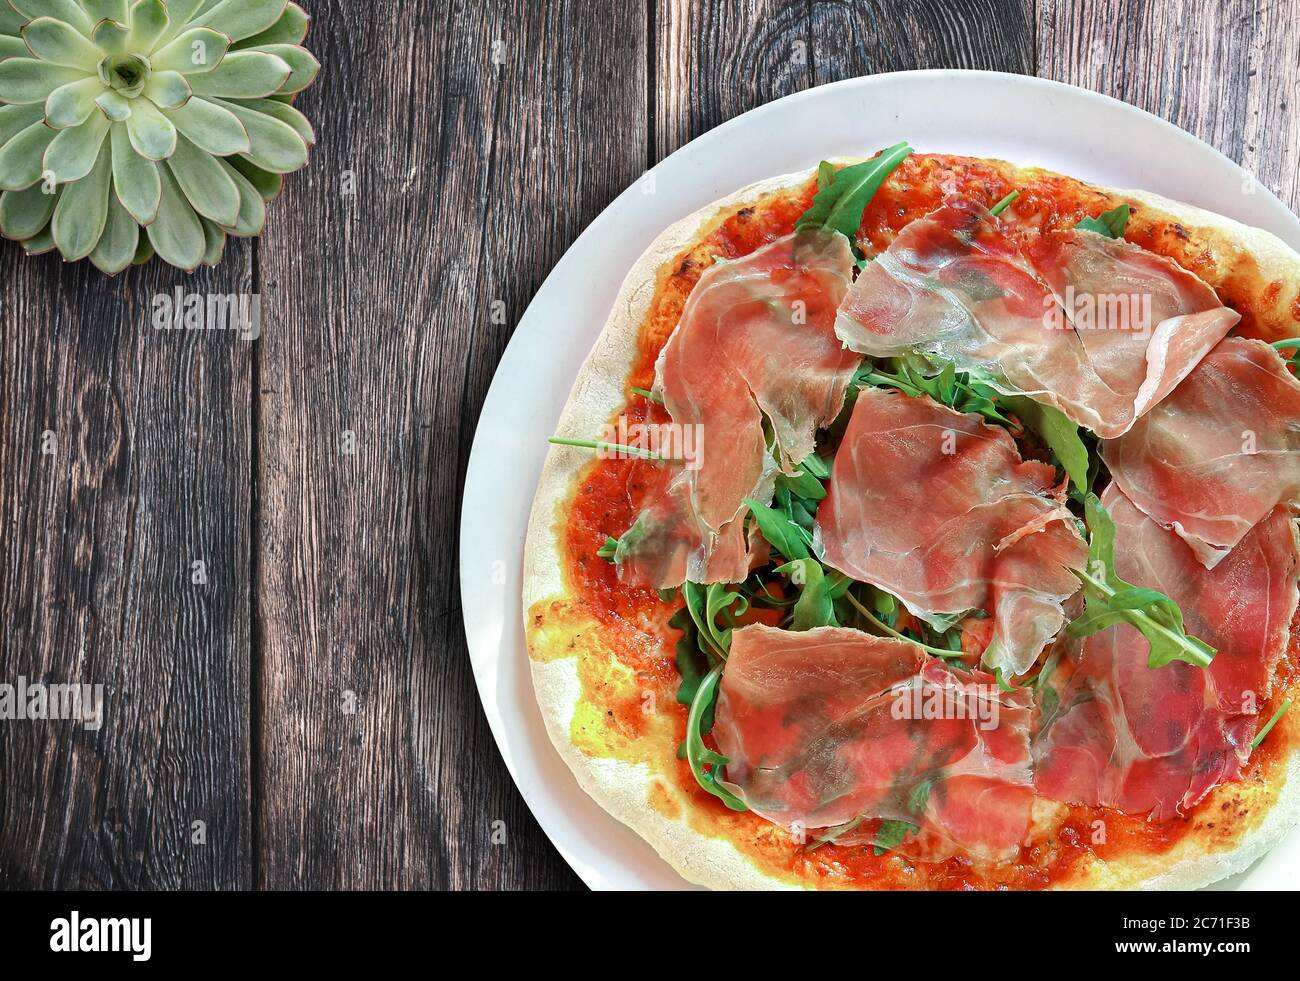 Vue sur une délicieuse pizza italienne maison fraîche avec jambon Serrano et arugula sur une table rustique en bois Banque D'Images